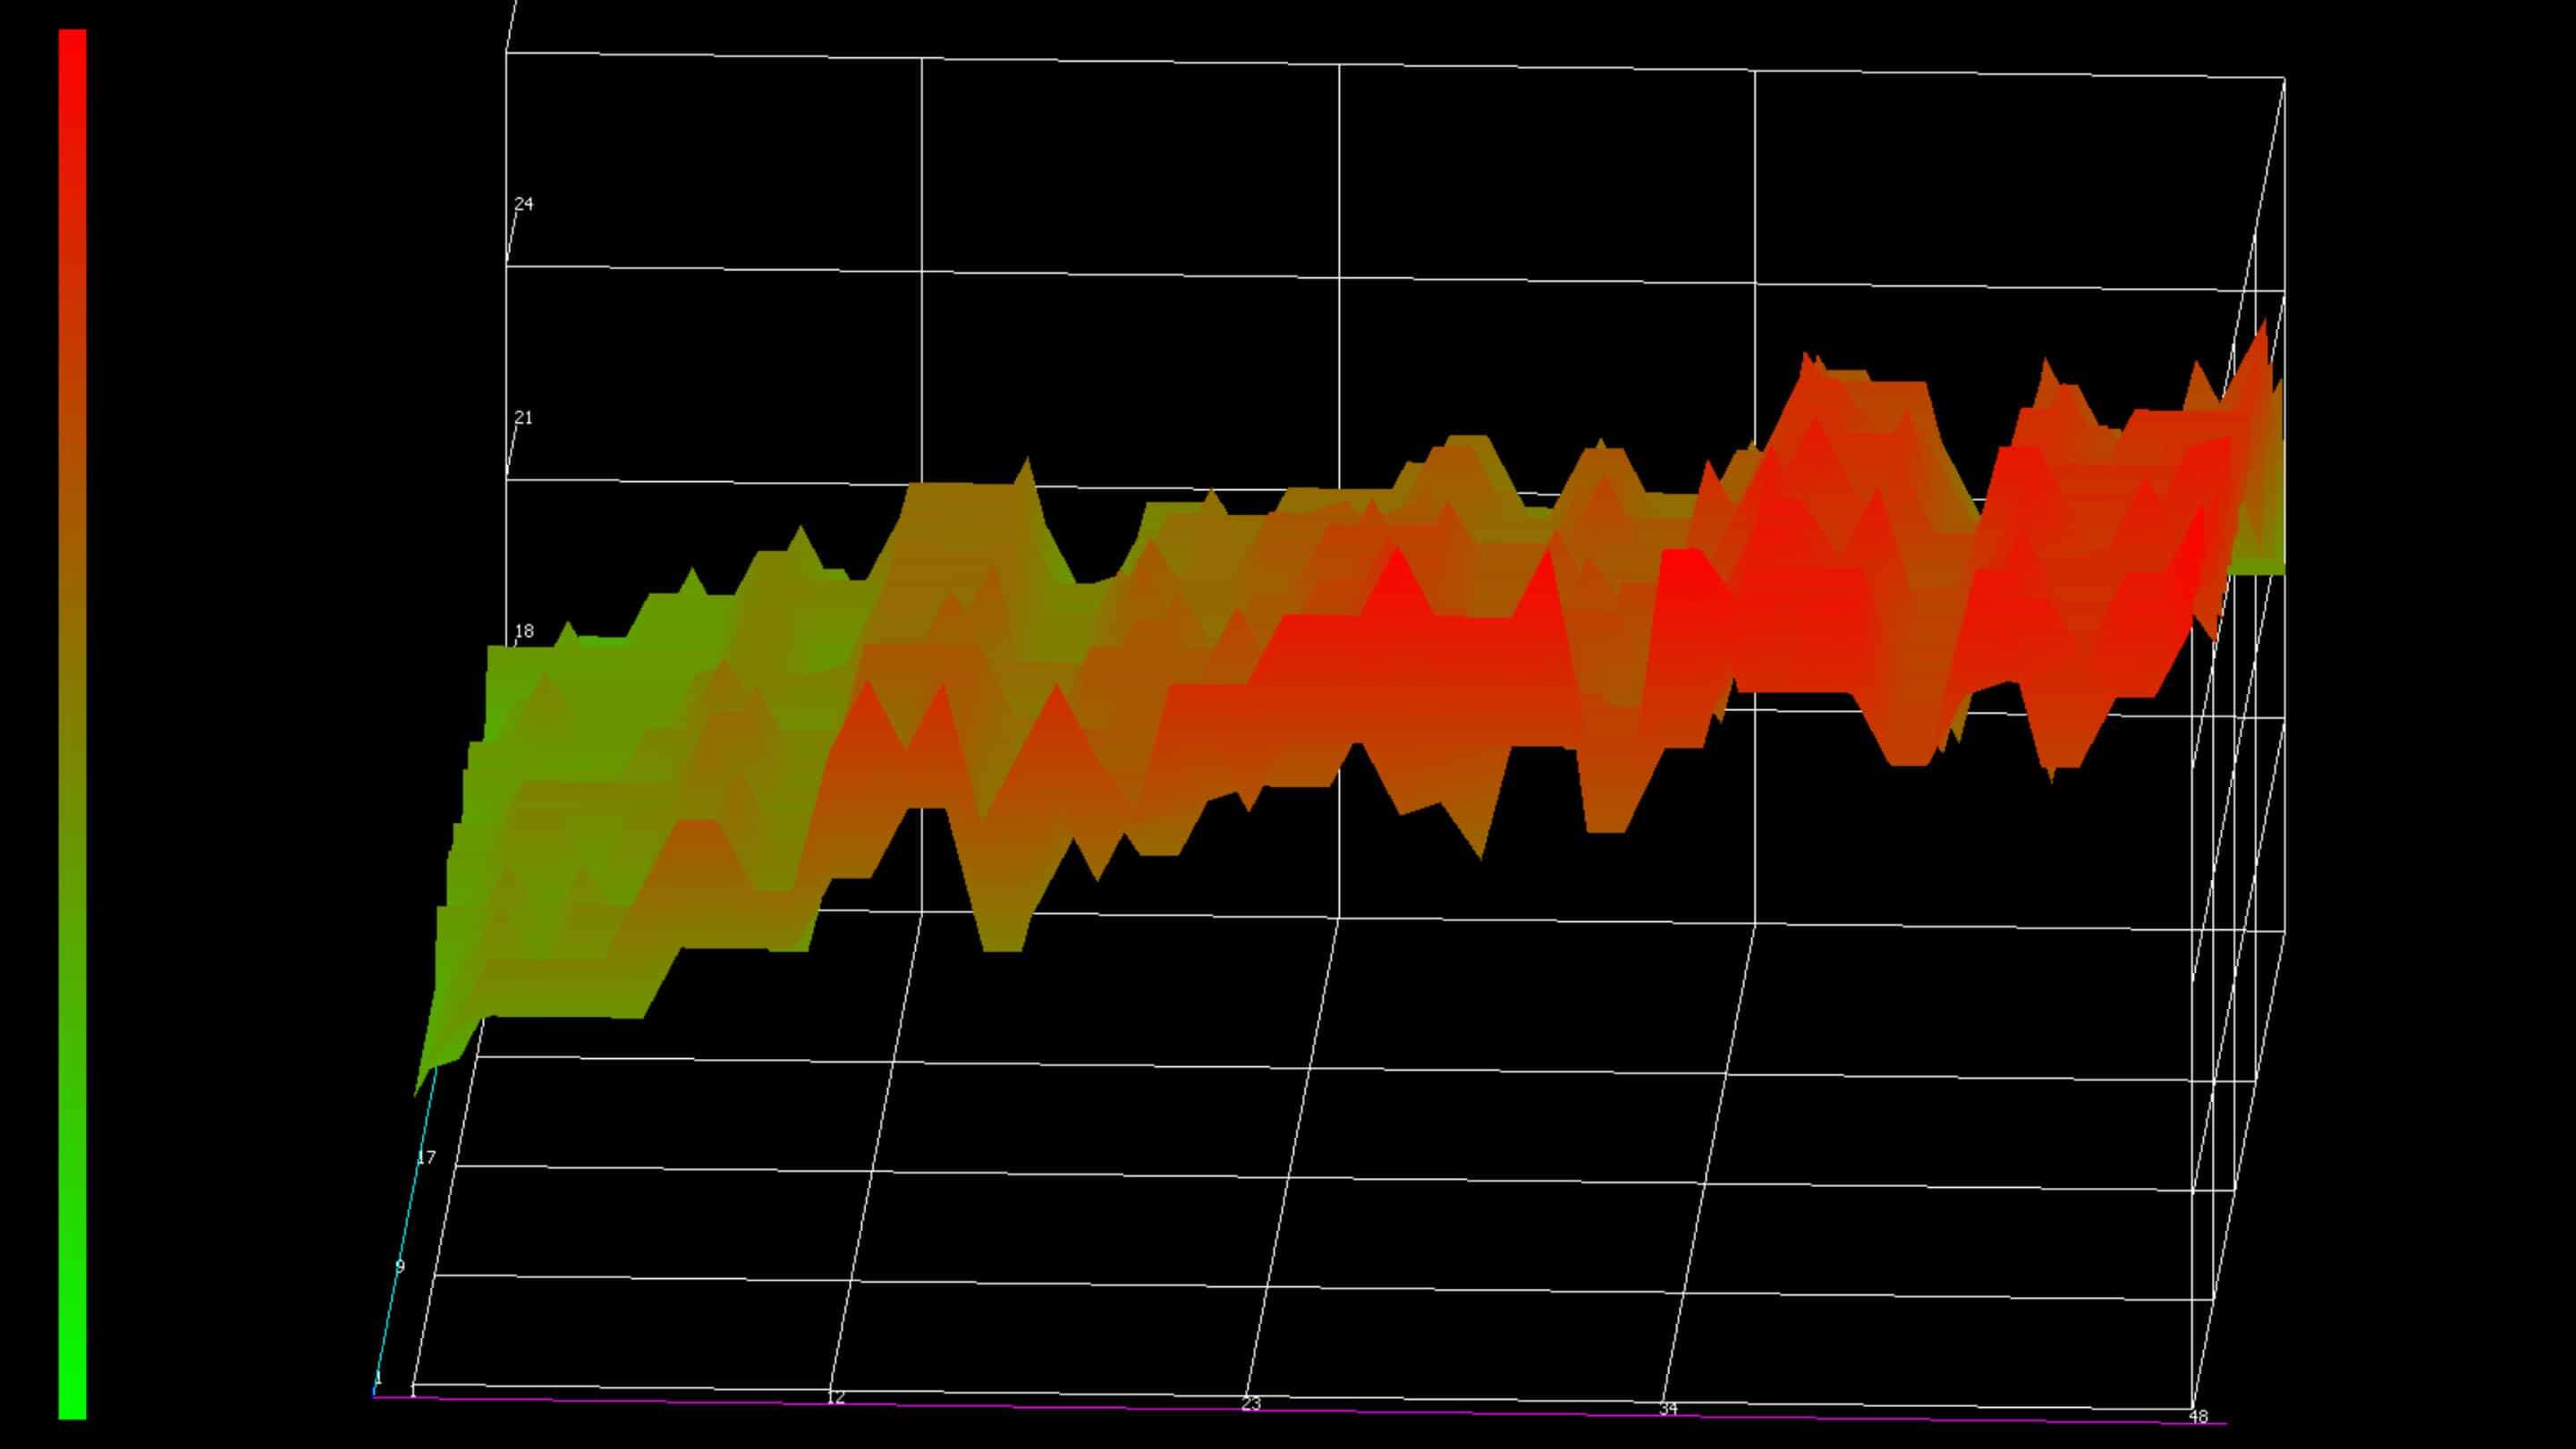 پی سی اے پی ٹچ اسکرین - پی سی اے پی سینسر رنگین لائن کے ساتھ گراف کو ٹیوننگ کرتا ہے